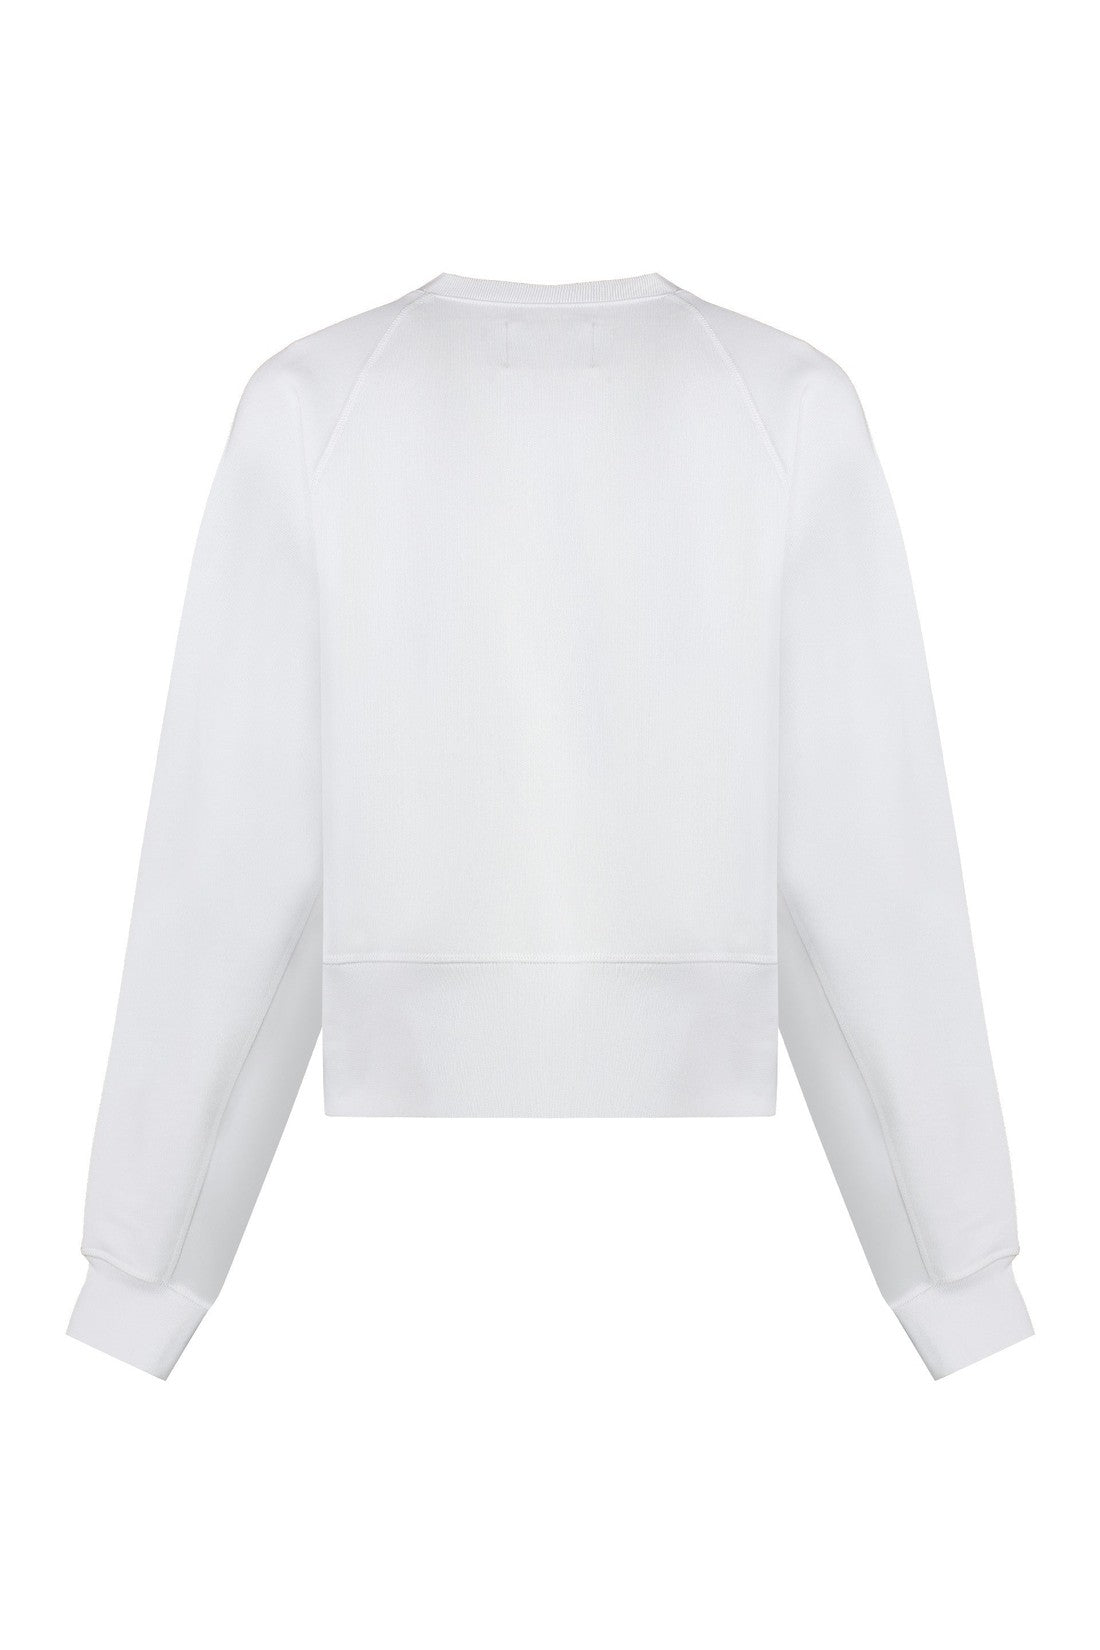 Vivienne Westwood-OUTLET-SALE-Logo sweatshirt-ARCHIVIST